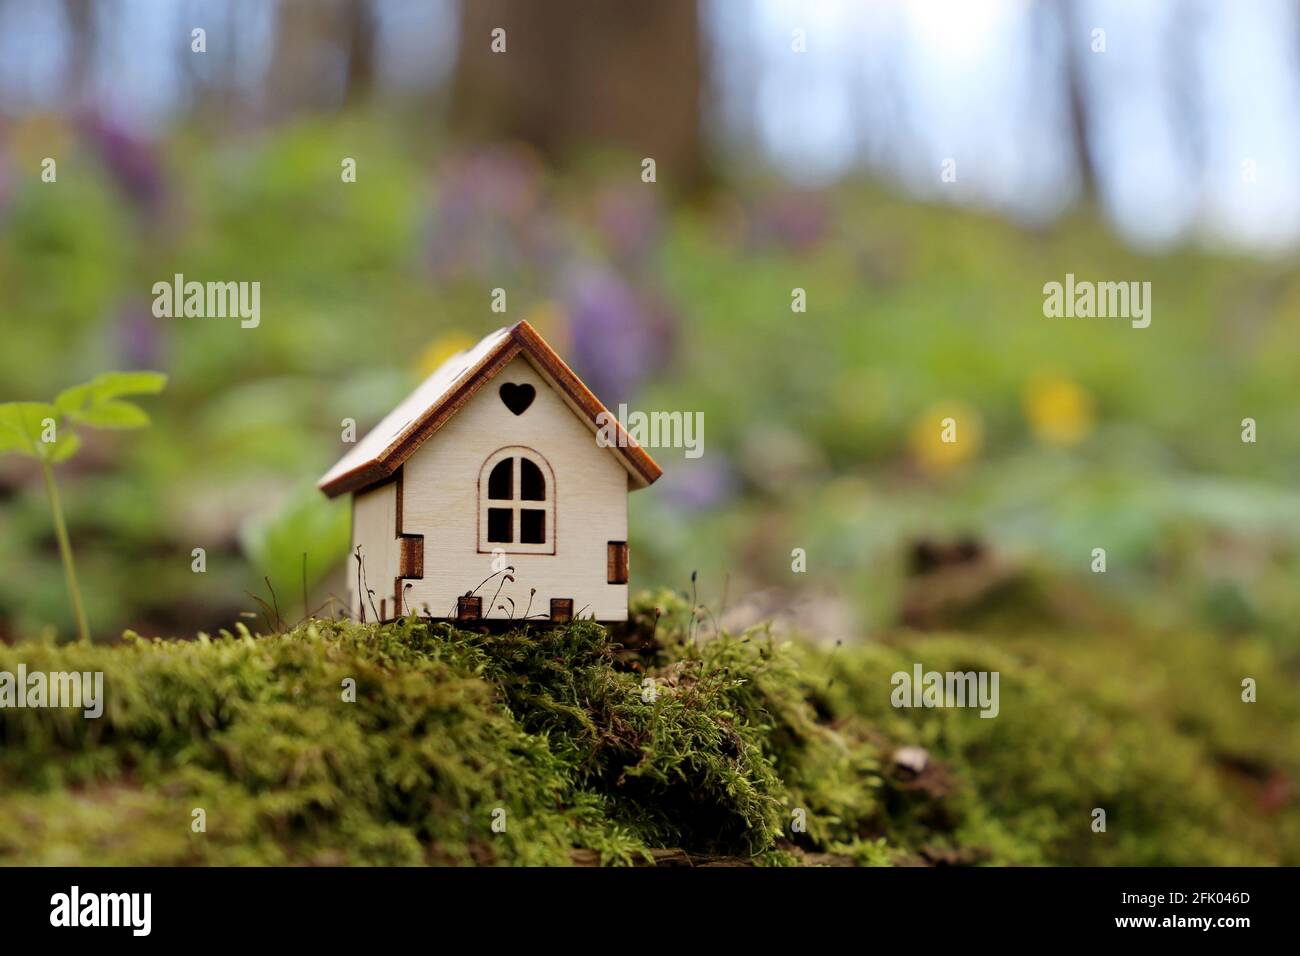 Holzhaus Modell in einem Wald auf Frühlingsblumen Hintergrund. Konzept von Landhaus, Immobilien in ökologisch sauberen Bereich, lebendige Farben der Fee Stockfoto